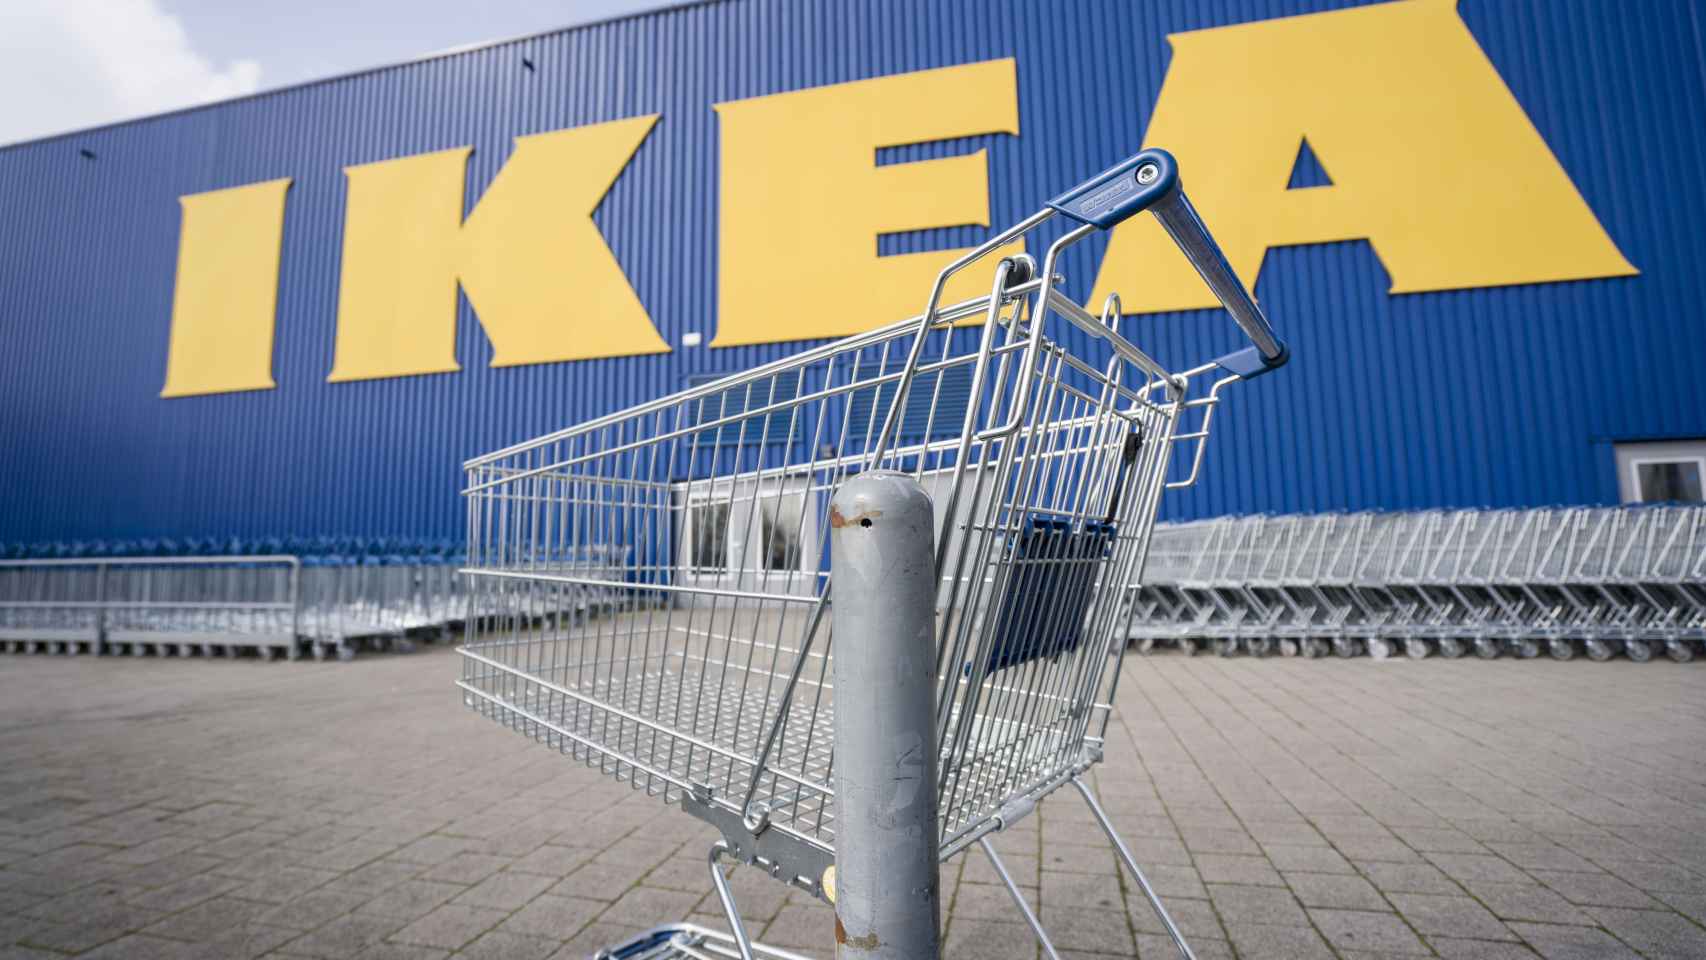 La facturación de Ikea España cae un 9,3% a pesar de disparar sus